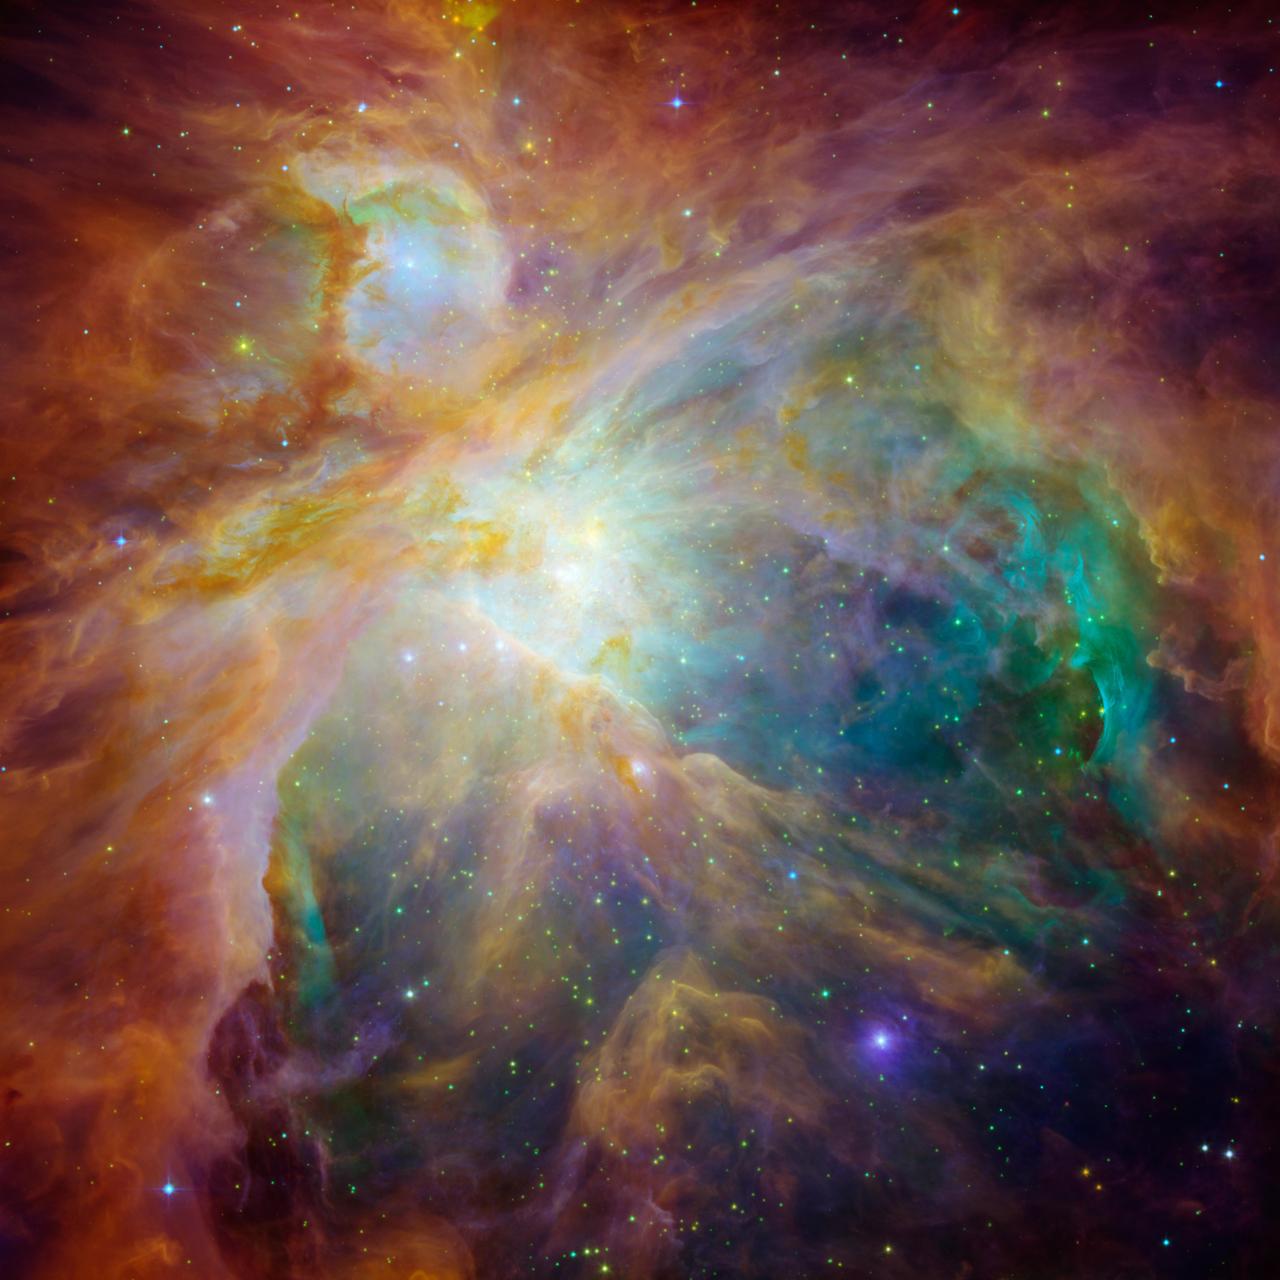 ハッブル宇宙望遠鏡とスピッツァー宇宙望遠鏡で捉えたオリオン大星雲の合成画像。